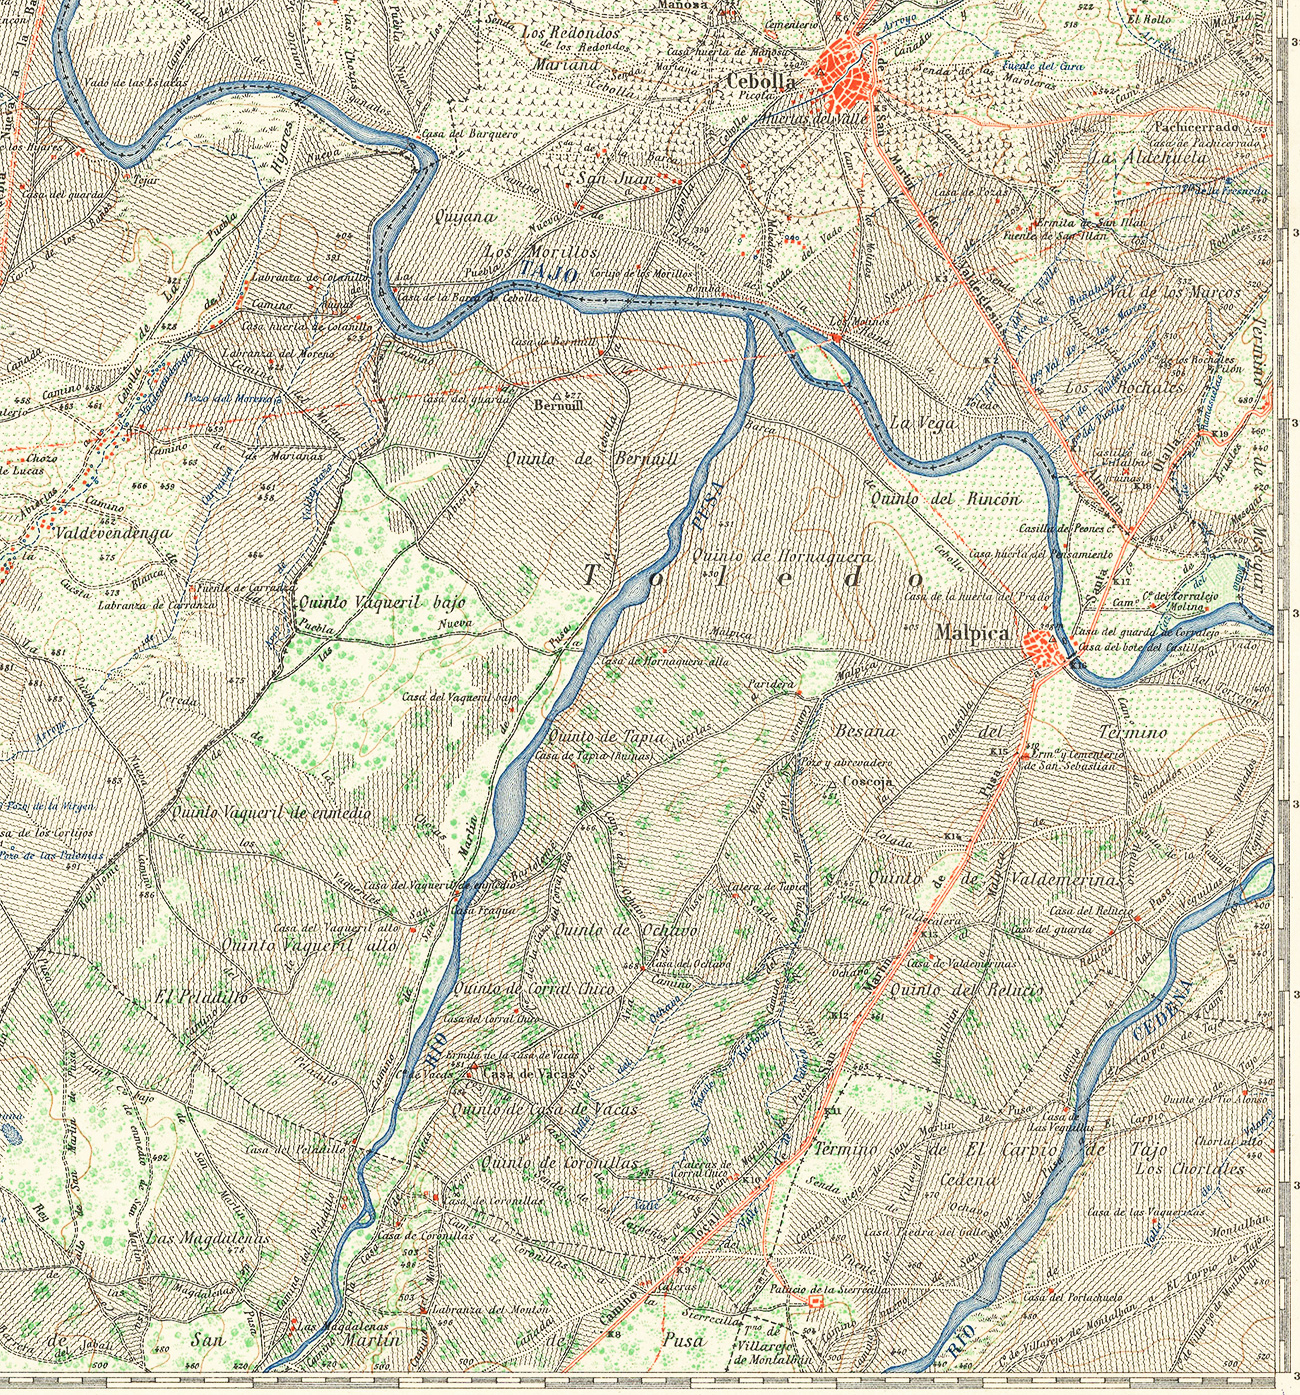 Recorte del mapa de la comarca de Talavera de la Reina elaborado por la Dirección general del Instituto Geográfico y Catastral en el año 1945